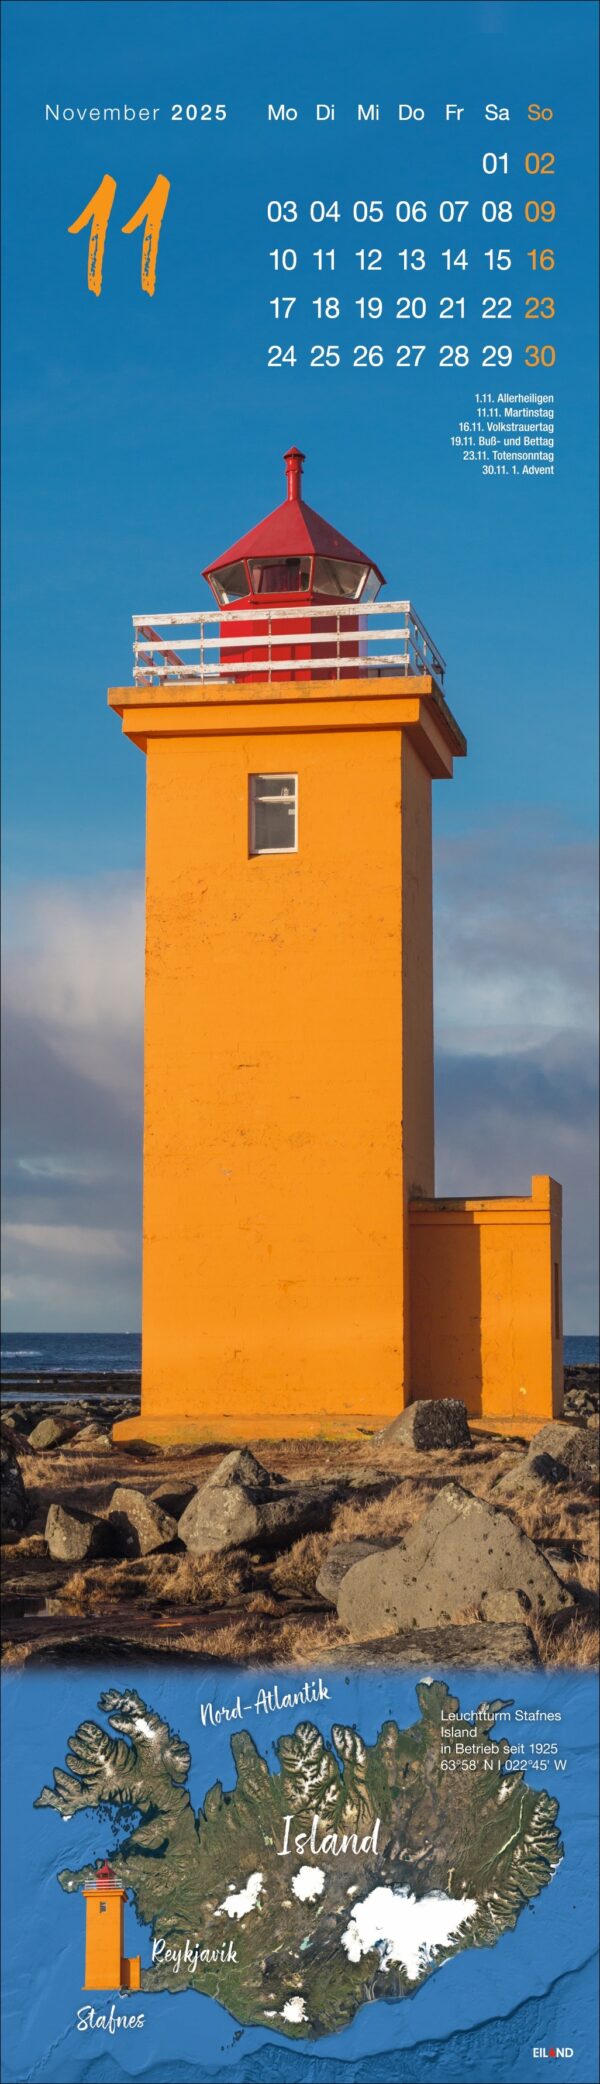 Ein LongEiland - Kalender 2025 für November mit einem leuchtend orangefarbenen Leuchtturm an einer felsigen Küste unter einem blauen Himmel mit vereinzelten Wolken. Die Daten sind auf der rechten Seite und eine Karte mit Islands Lage ist ebenfalls enthalten.